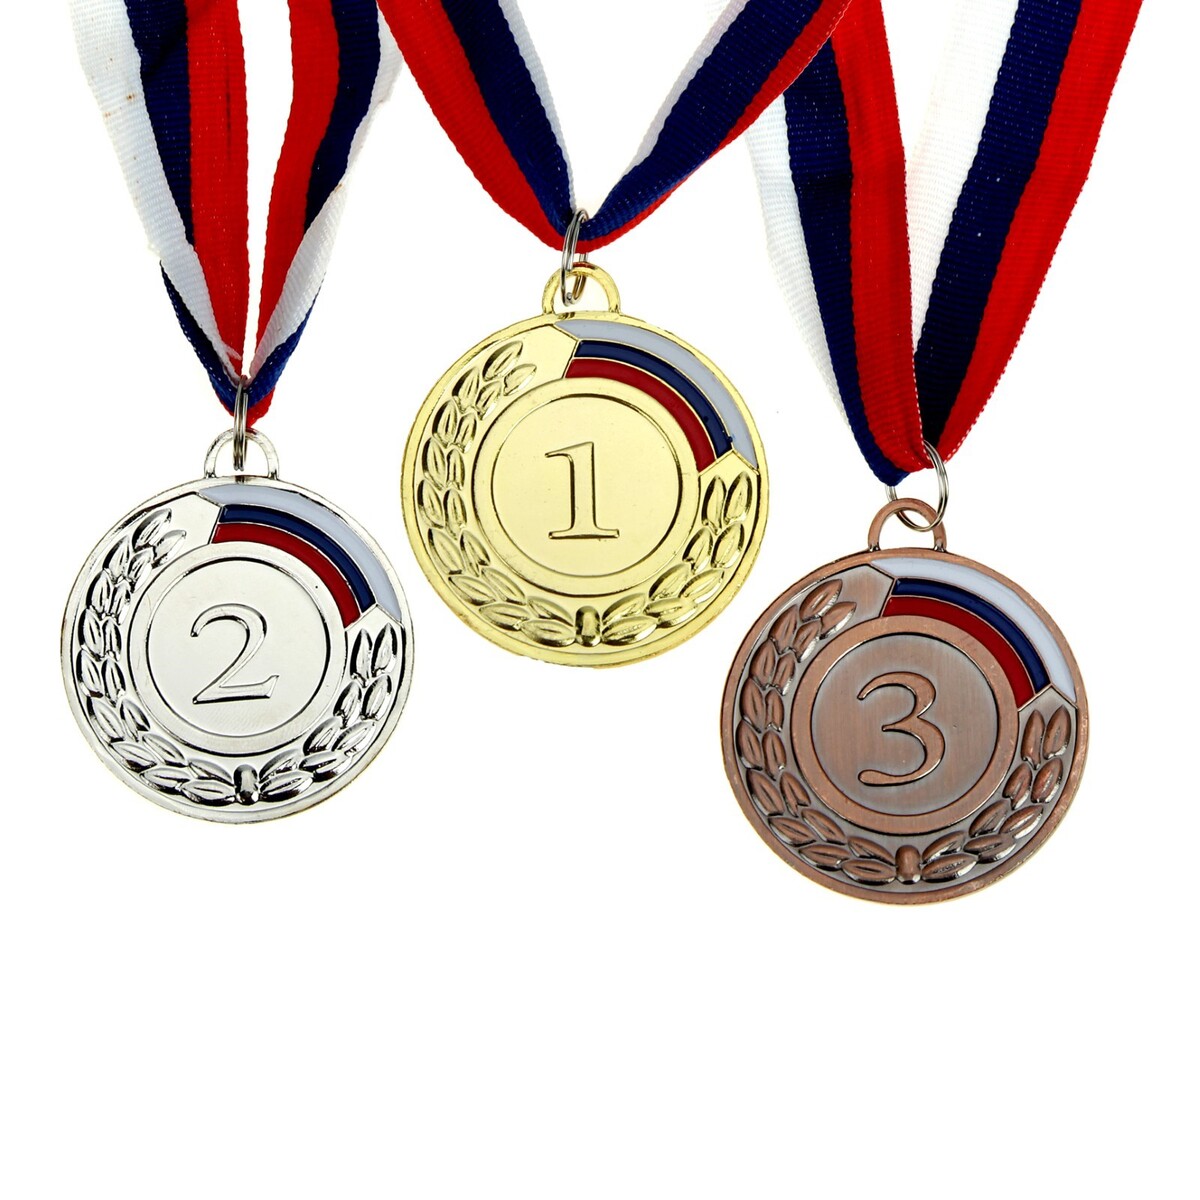 Медаль призовая 002 диам 5 см. 1 место, триколор. цвет зол. с лентой запретное место